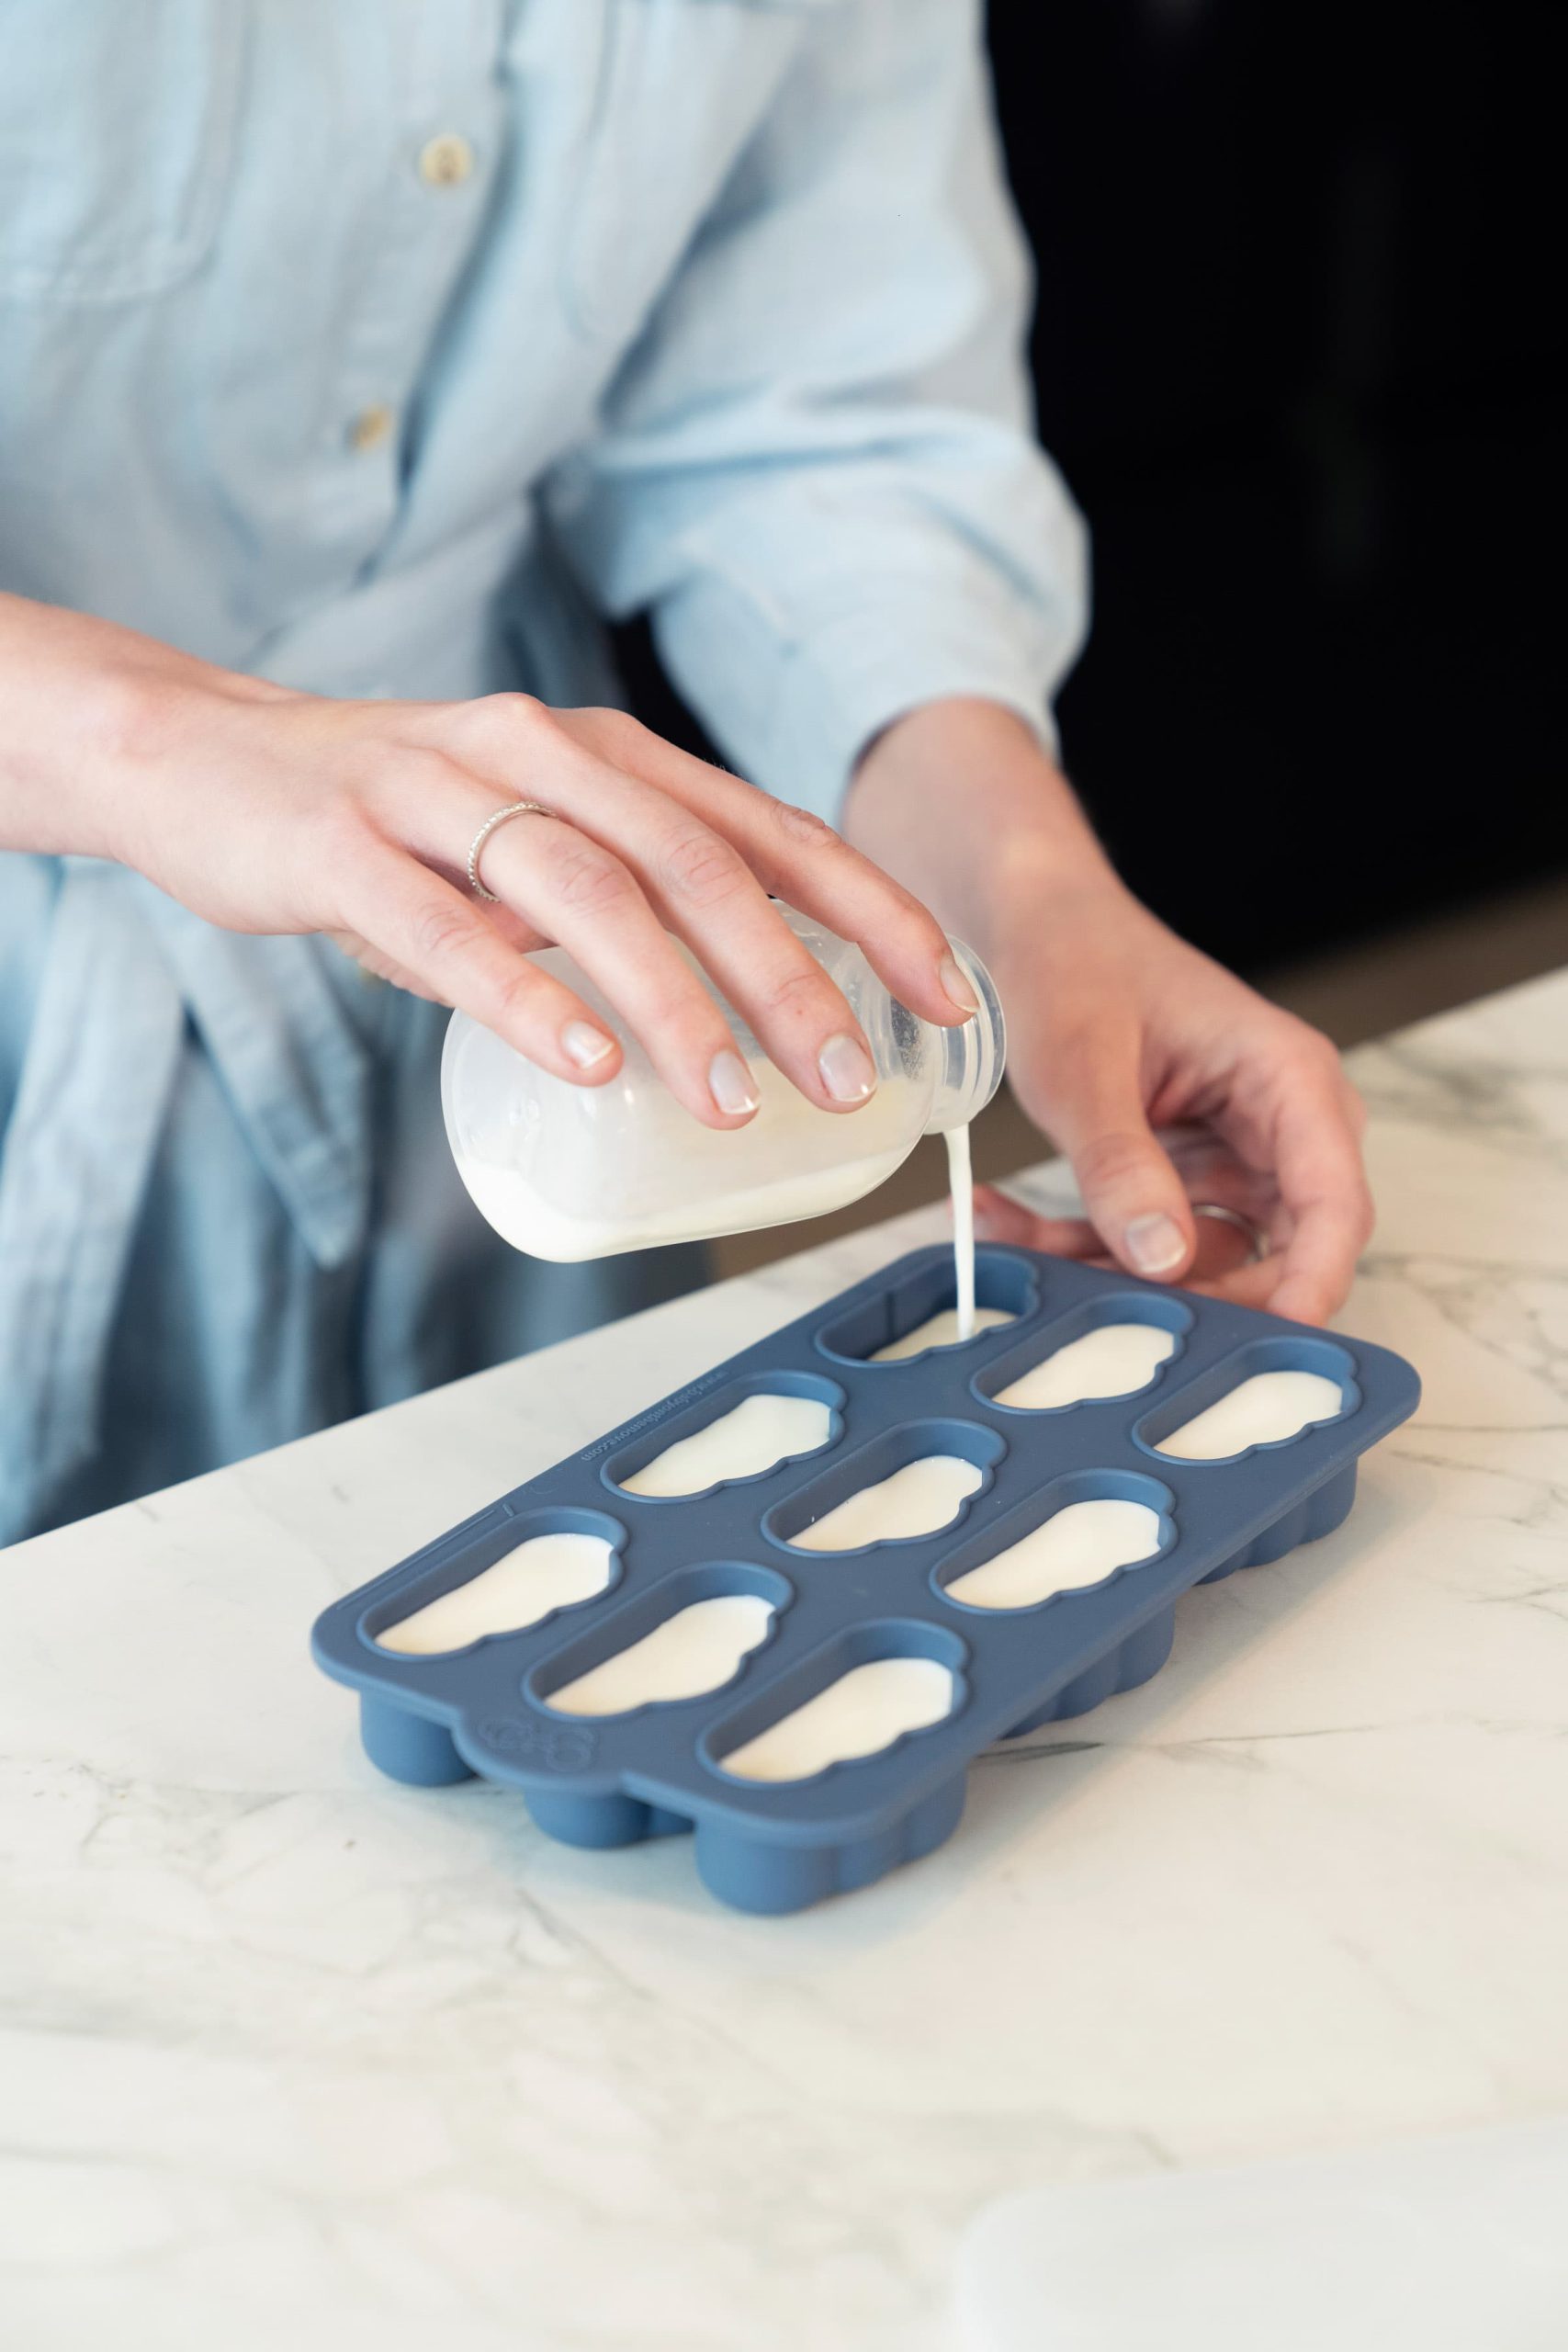 Add milk into our yummy trays